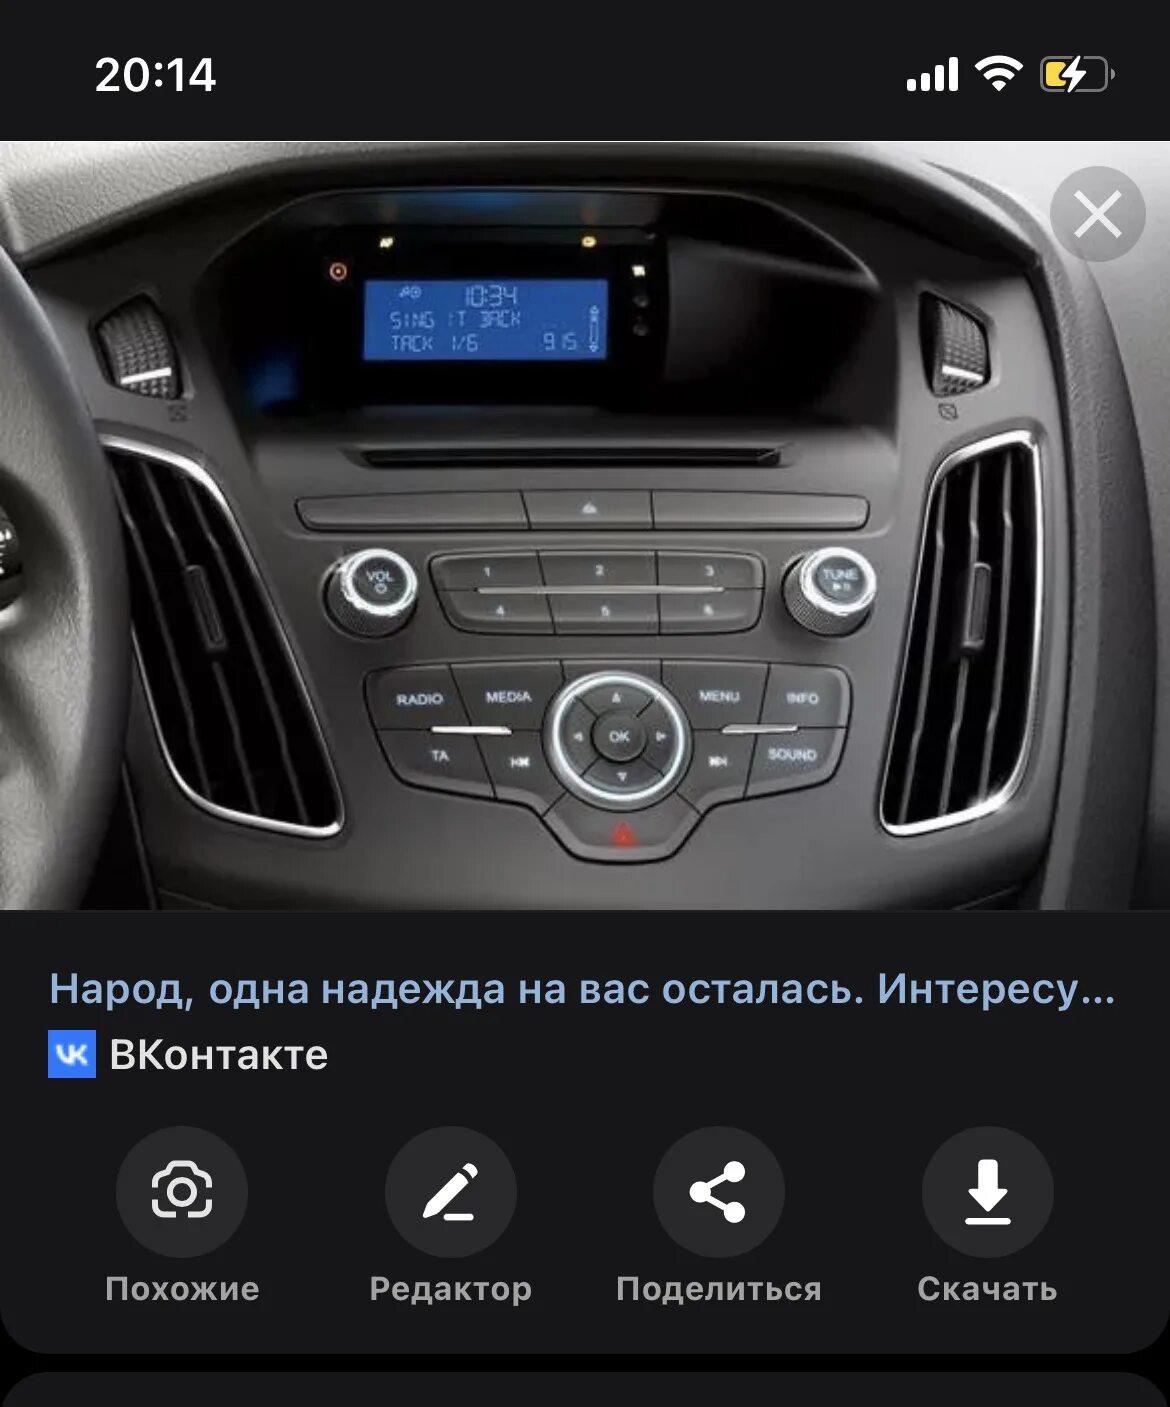 Ford Focus Audio. Форд фокус 3 Bose система звука. Магнитола Ford Kuga 2 Android. Антенна магнитофона Ford Kuga 2018.